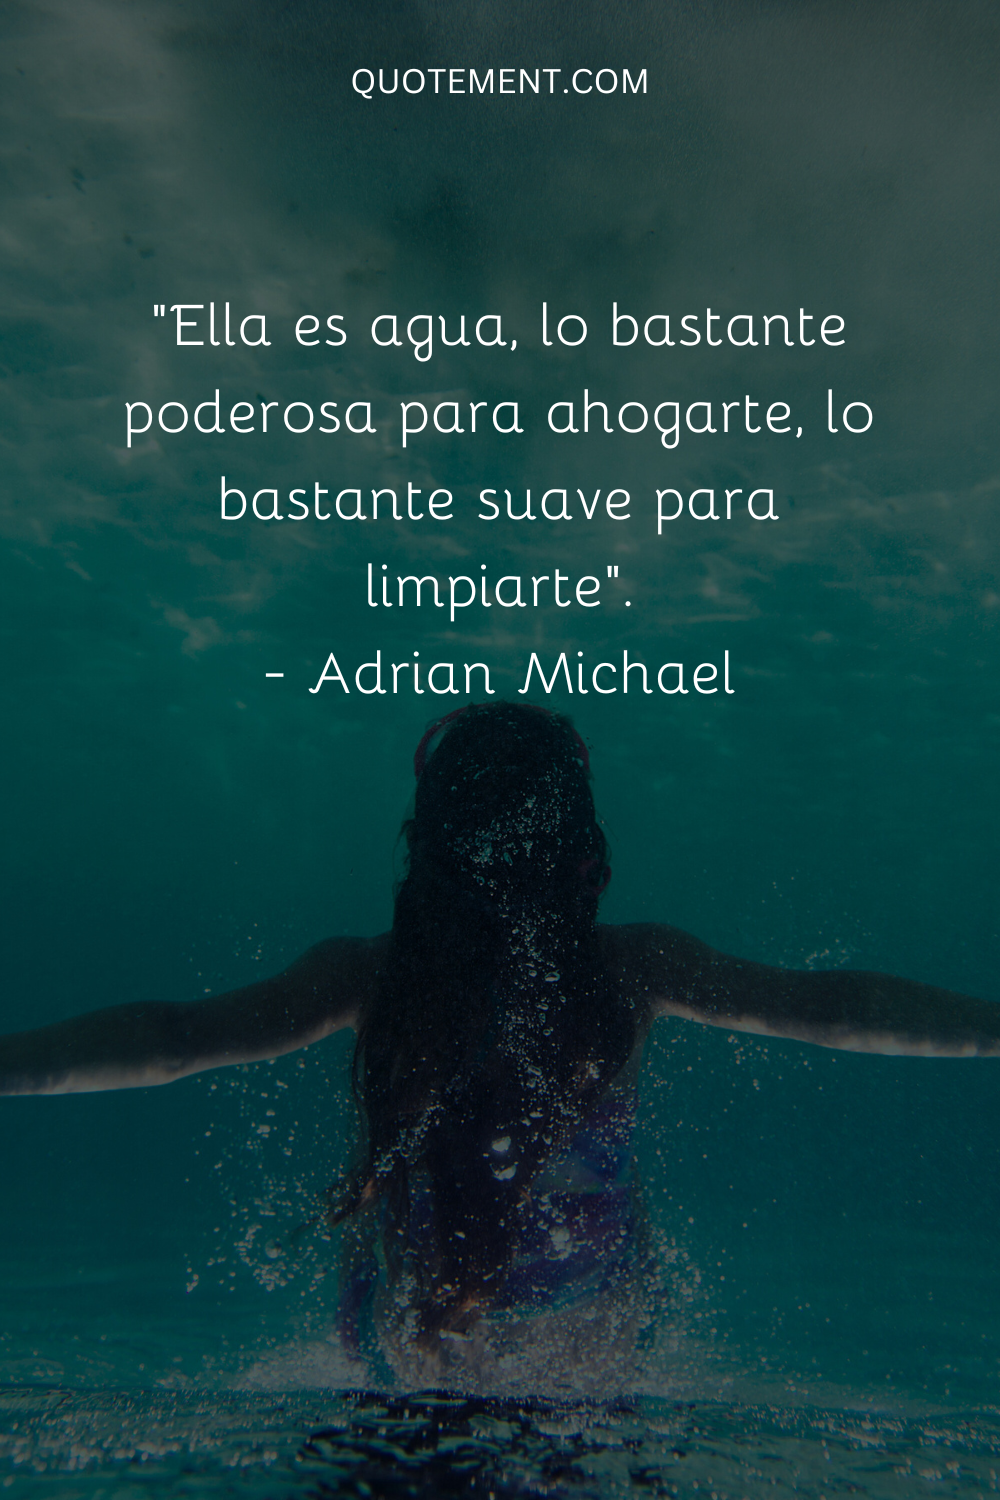 "Ella es agua, lo bastante poderosa para ahogarte, lo bastante suave para limpiarte". - Adrian Michael